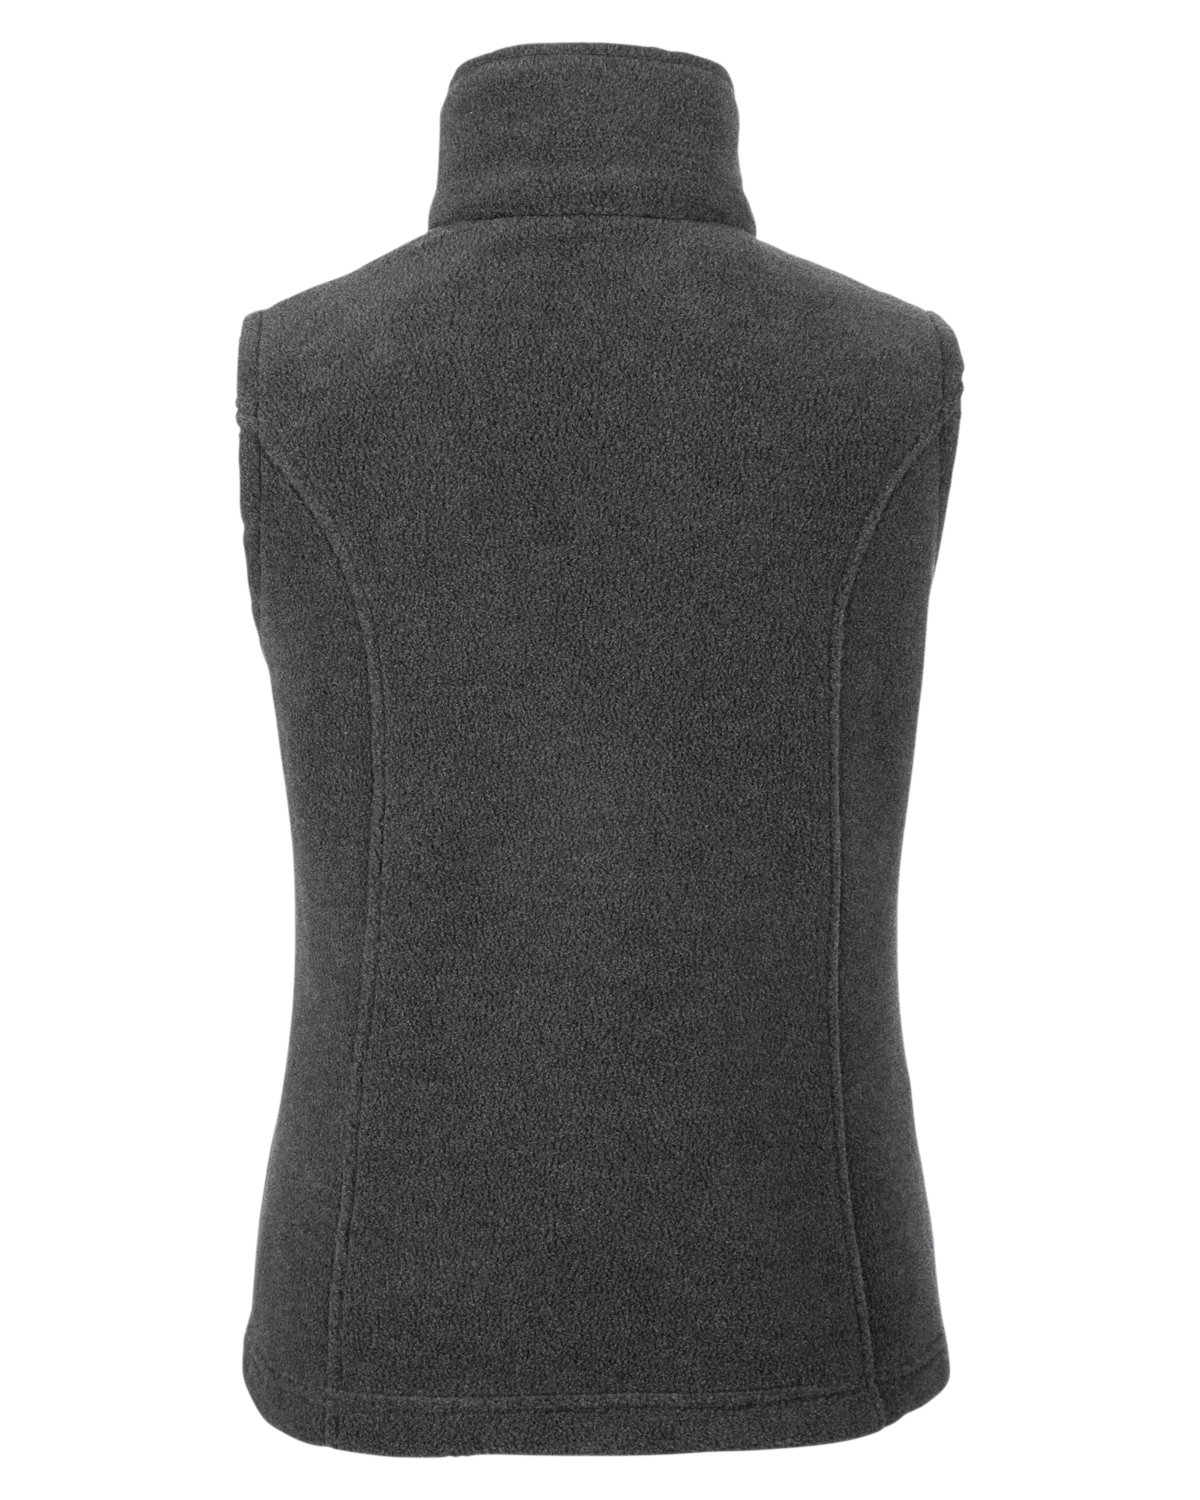 Women’s Benton Springs™ Fleece Vest